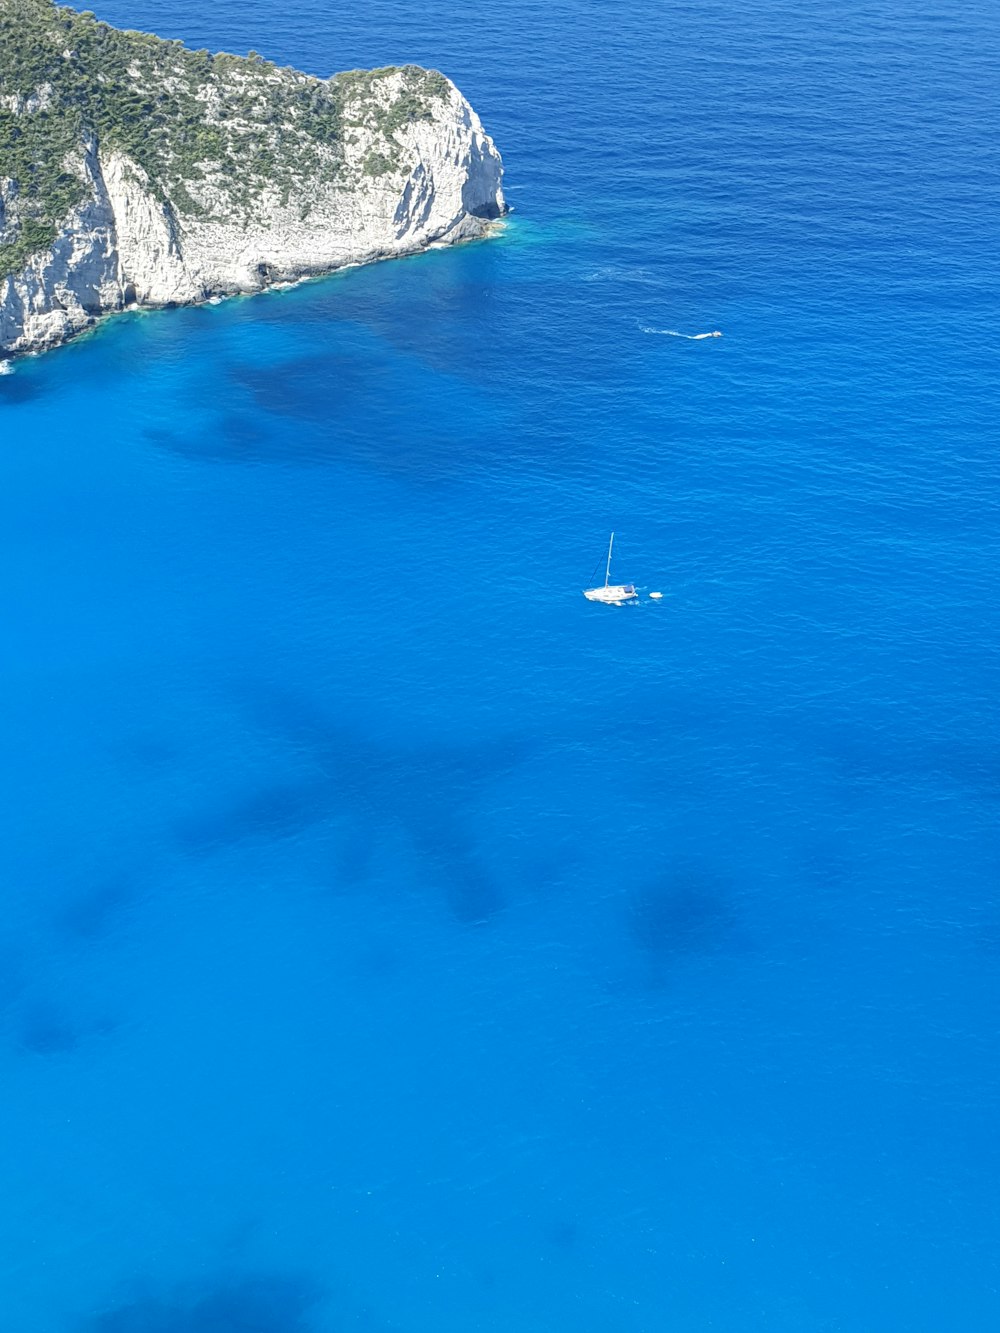 voilier blanc dans la mer bleue passant falaise rocheuse blanche